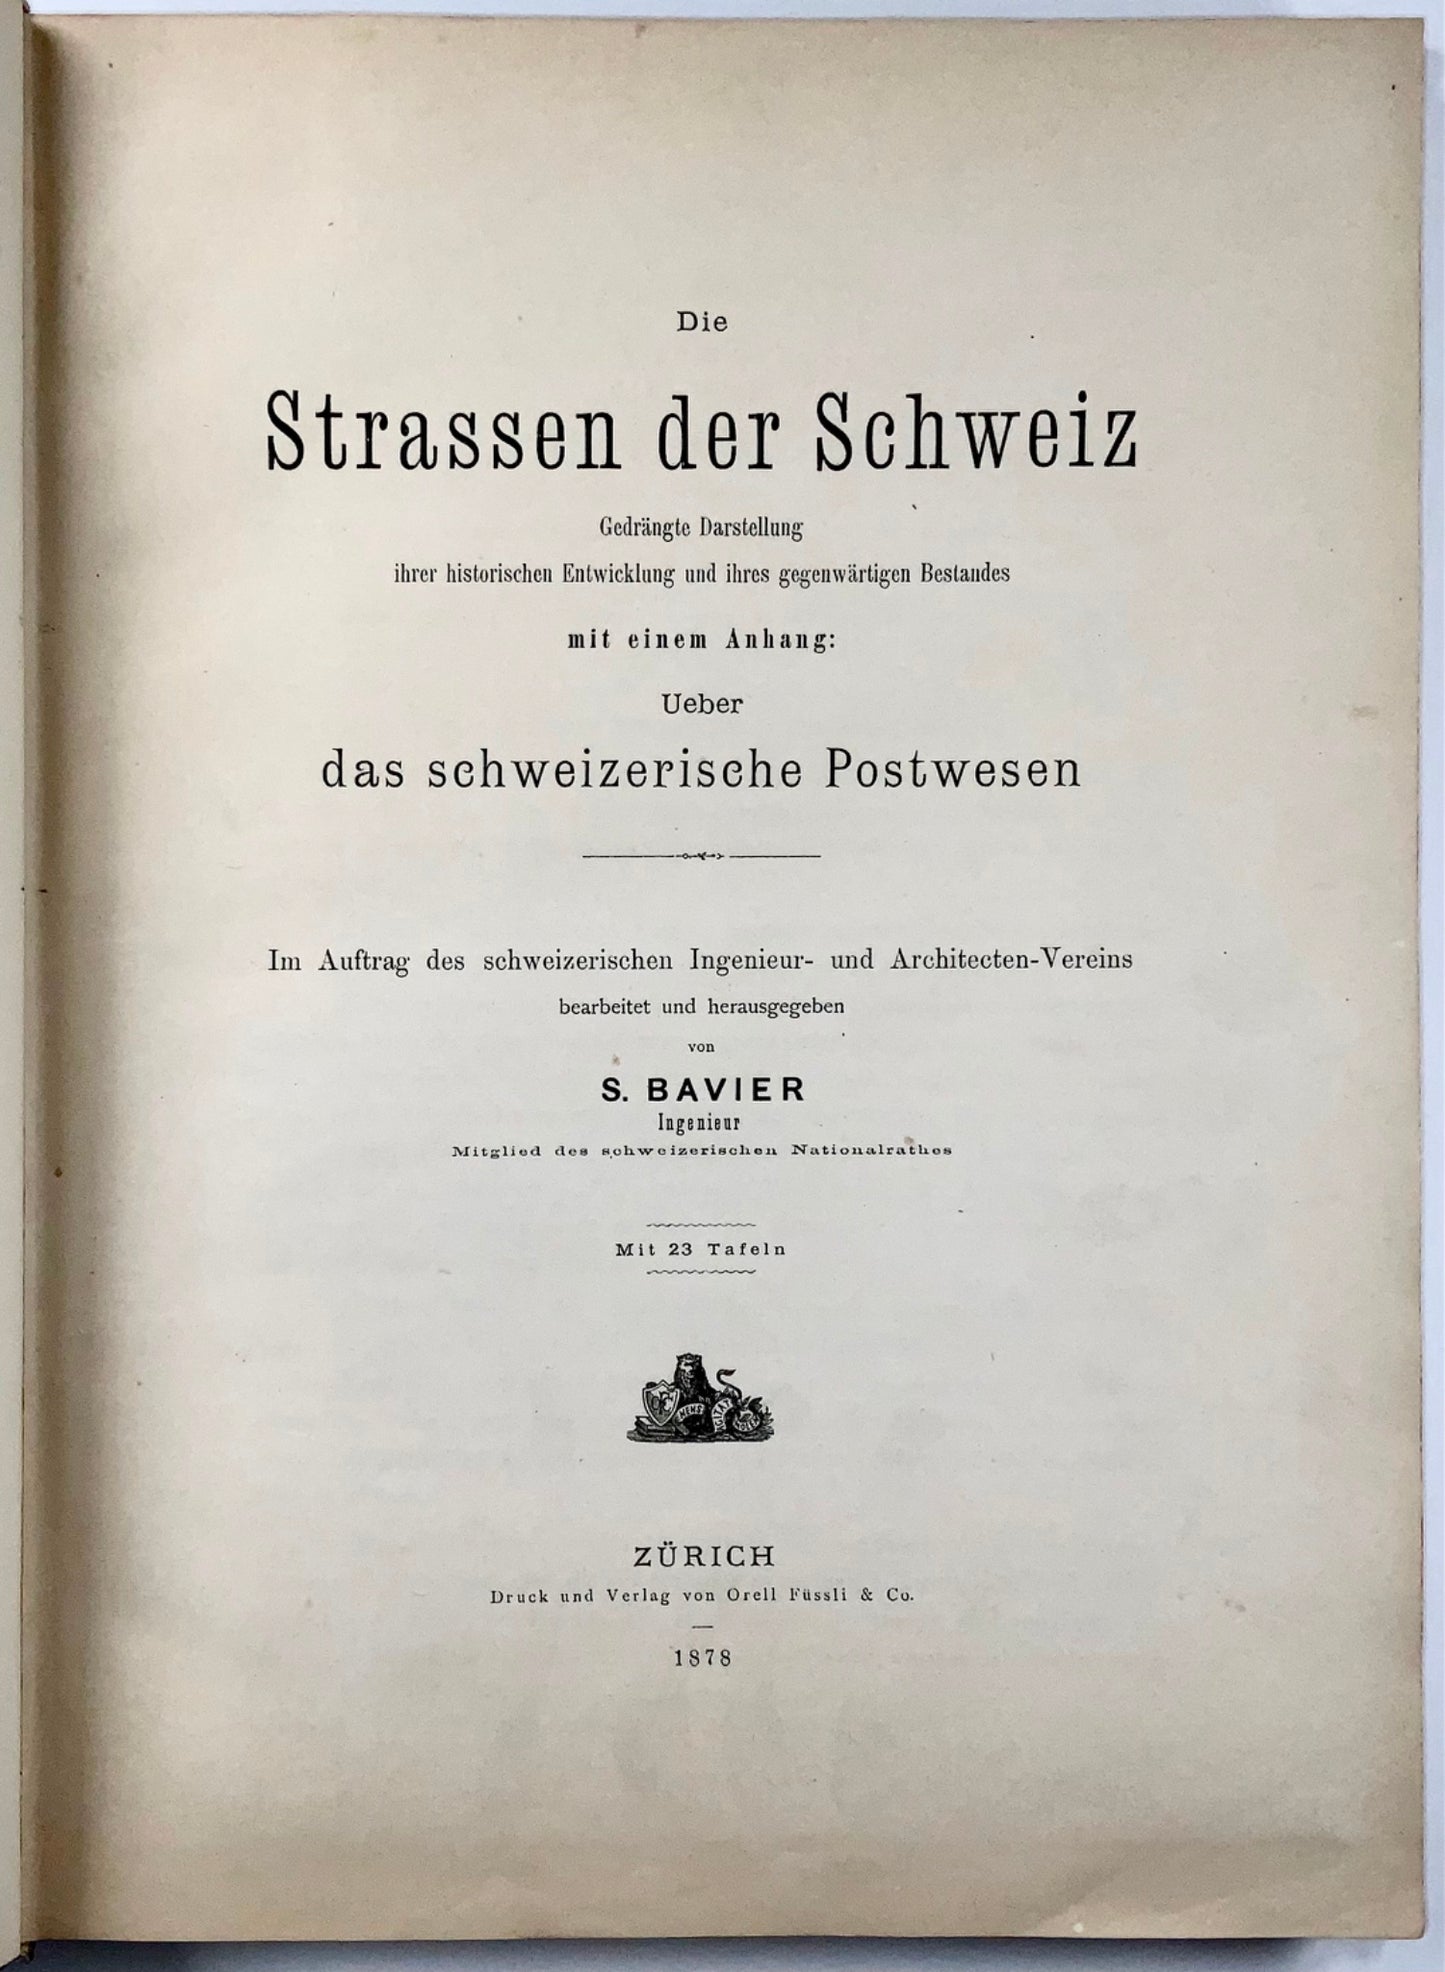 1878 Lavori classici per la costruzione delle strade alpine e della Posta Svizzera